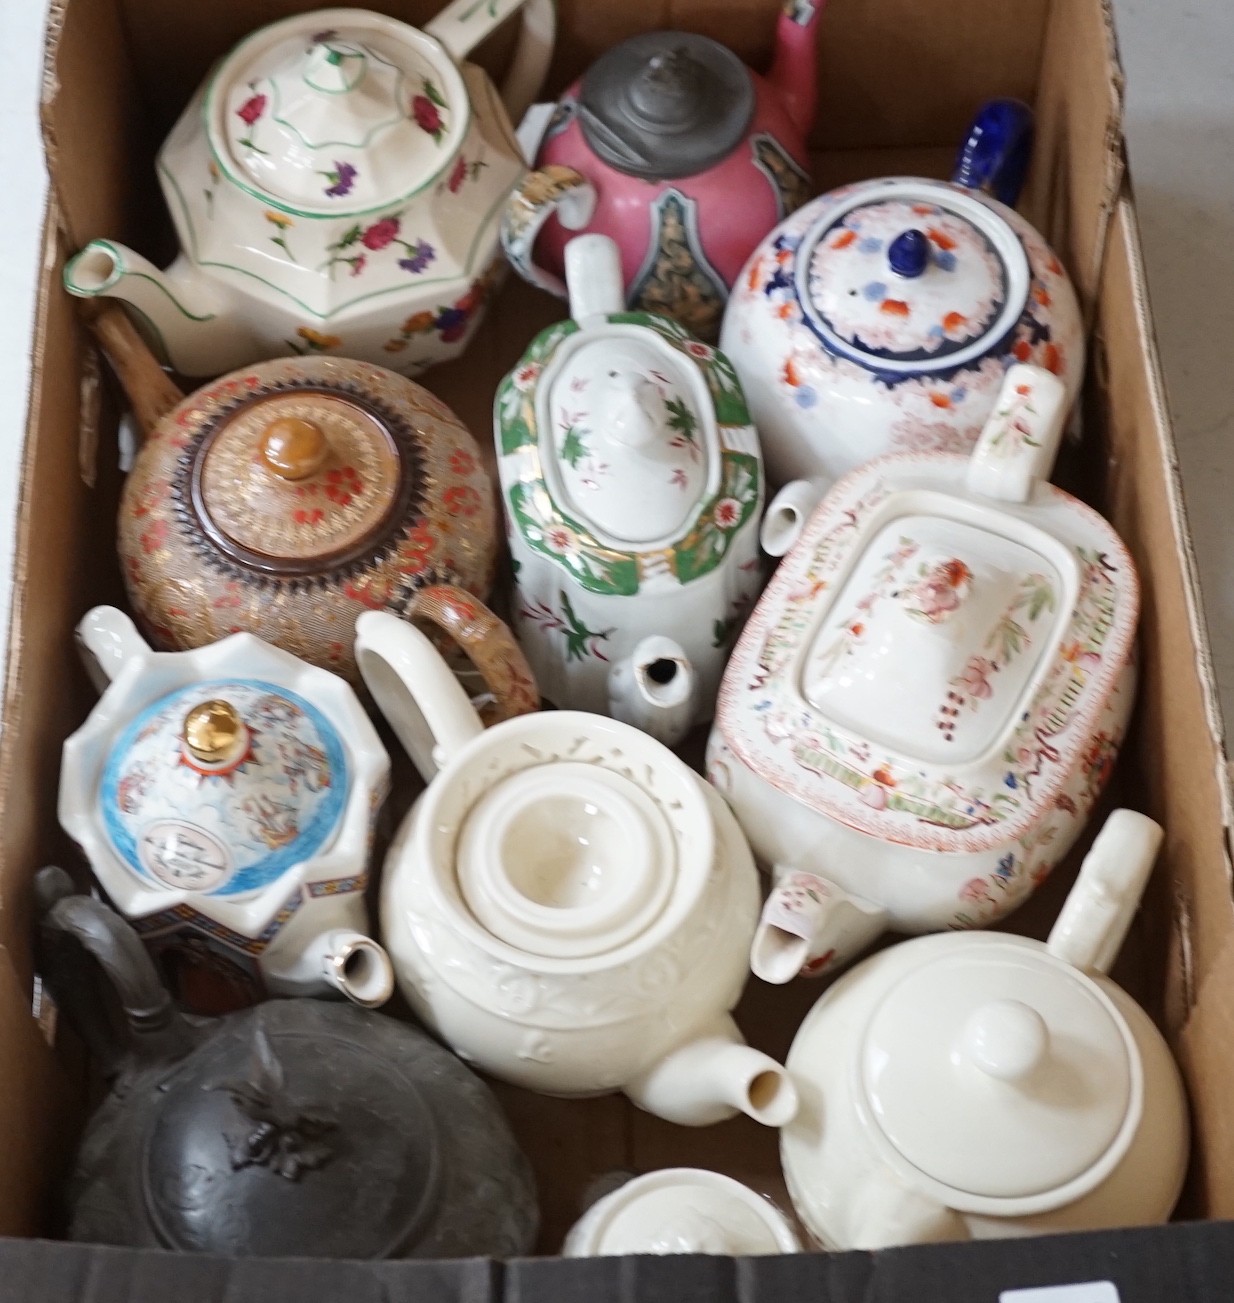 A quantity of various teapots including Doulton, Sadler etc.